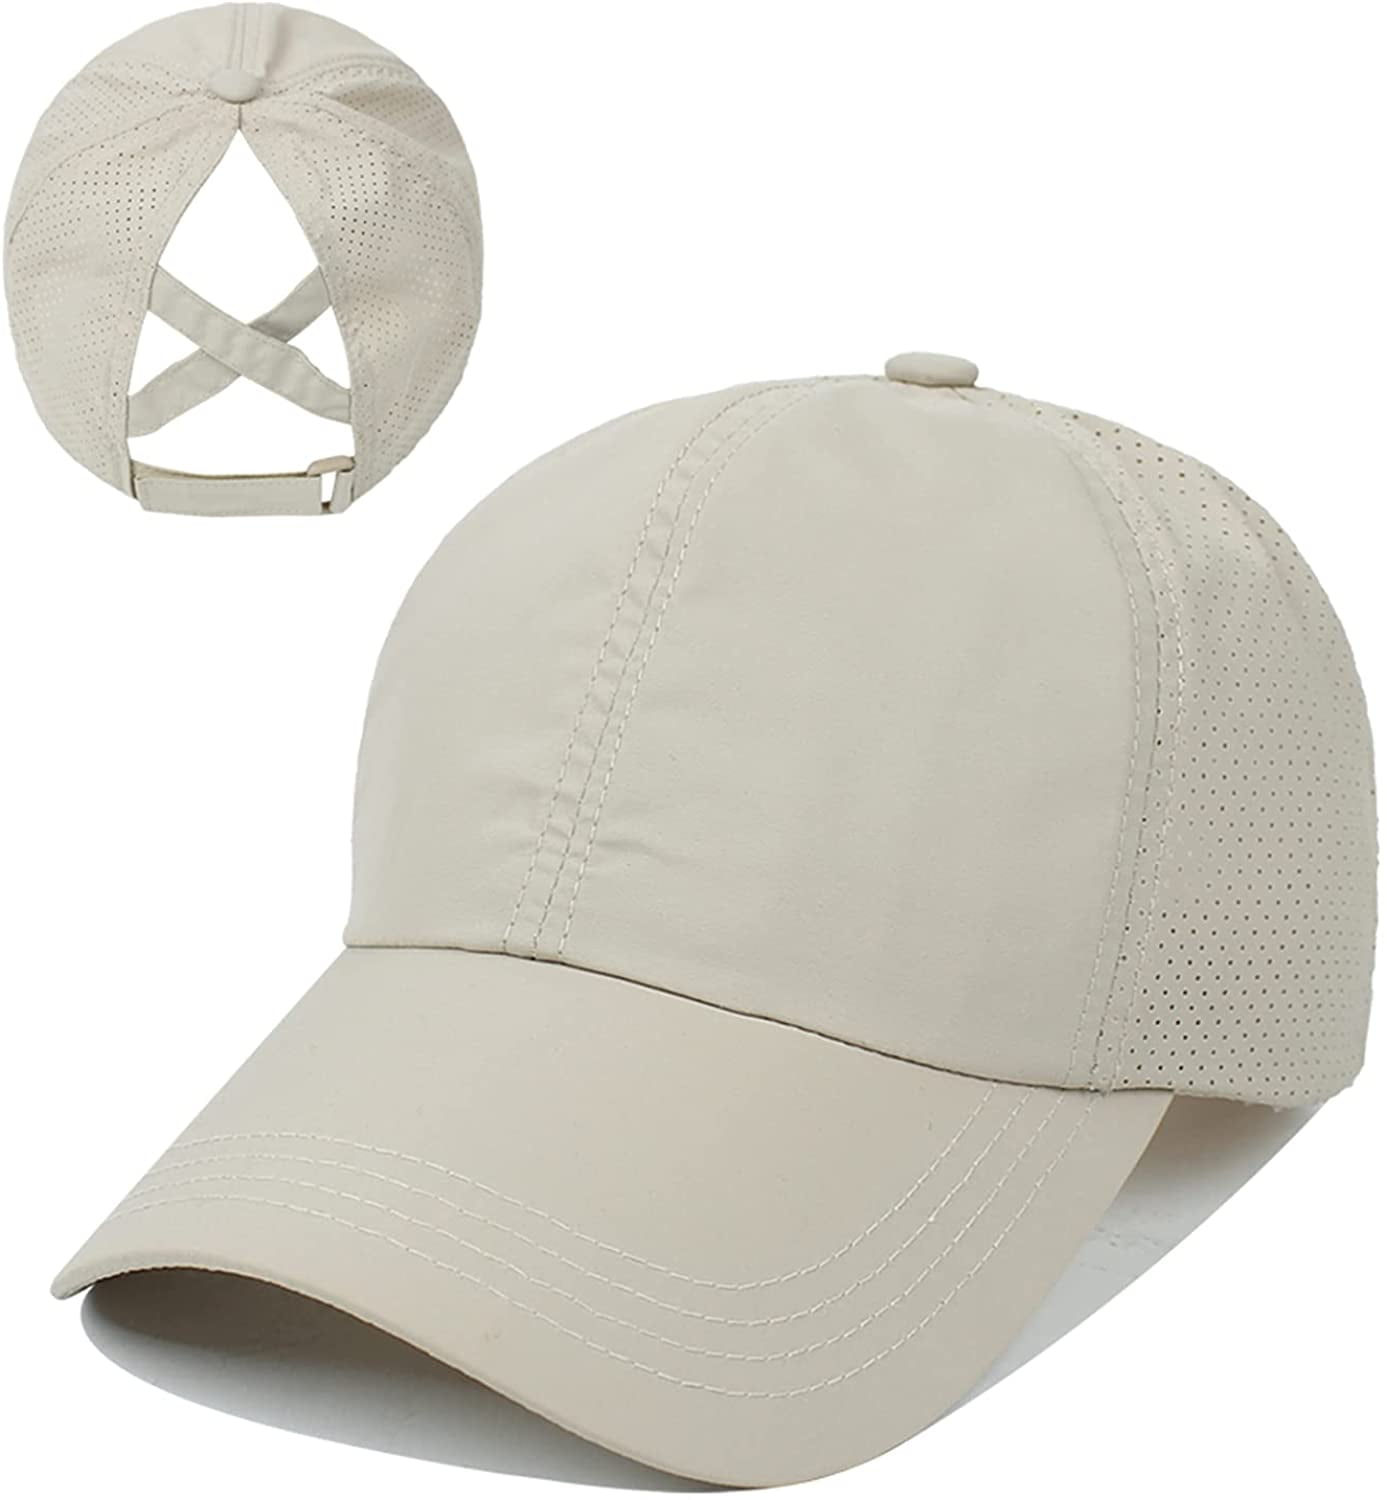 Penguin Family Adjustable Baseball Visor Cap,Mesh Hat,Men Women Athletic Hats